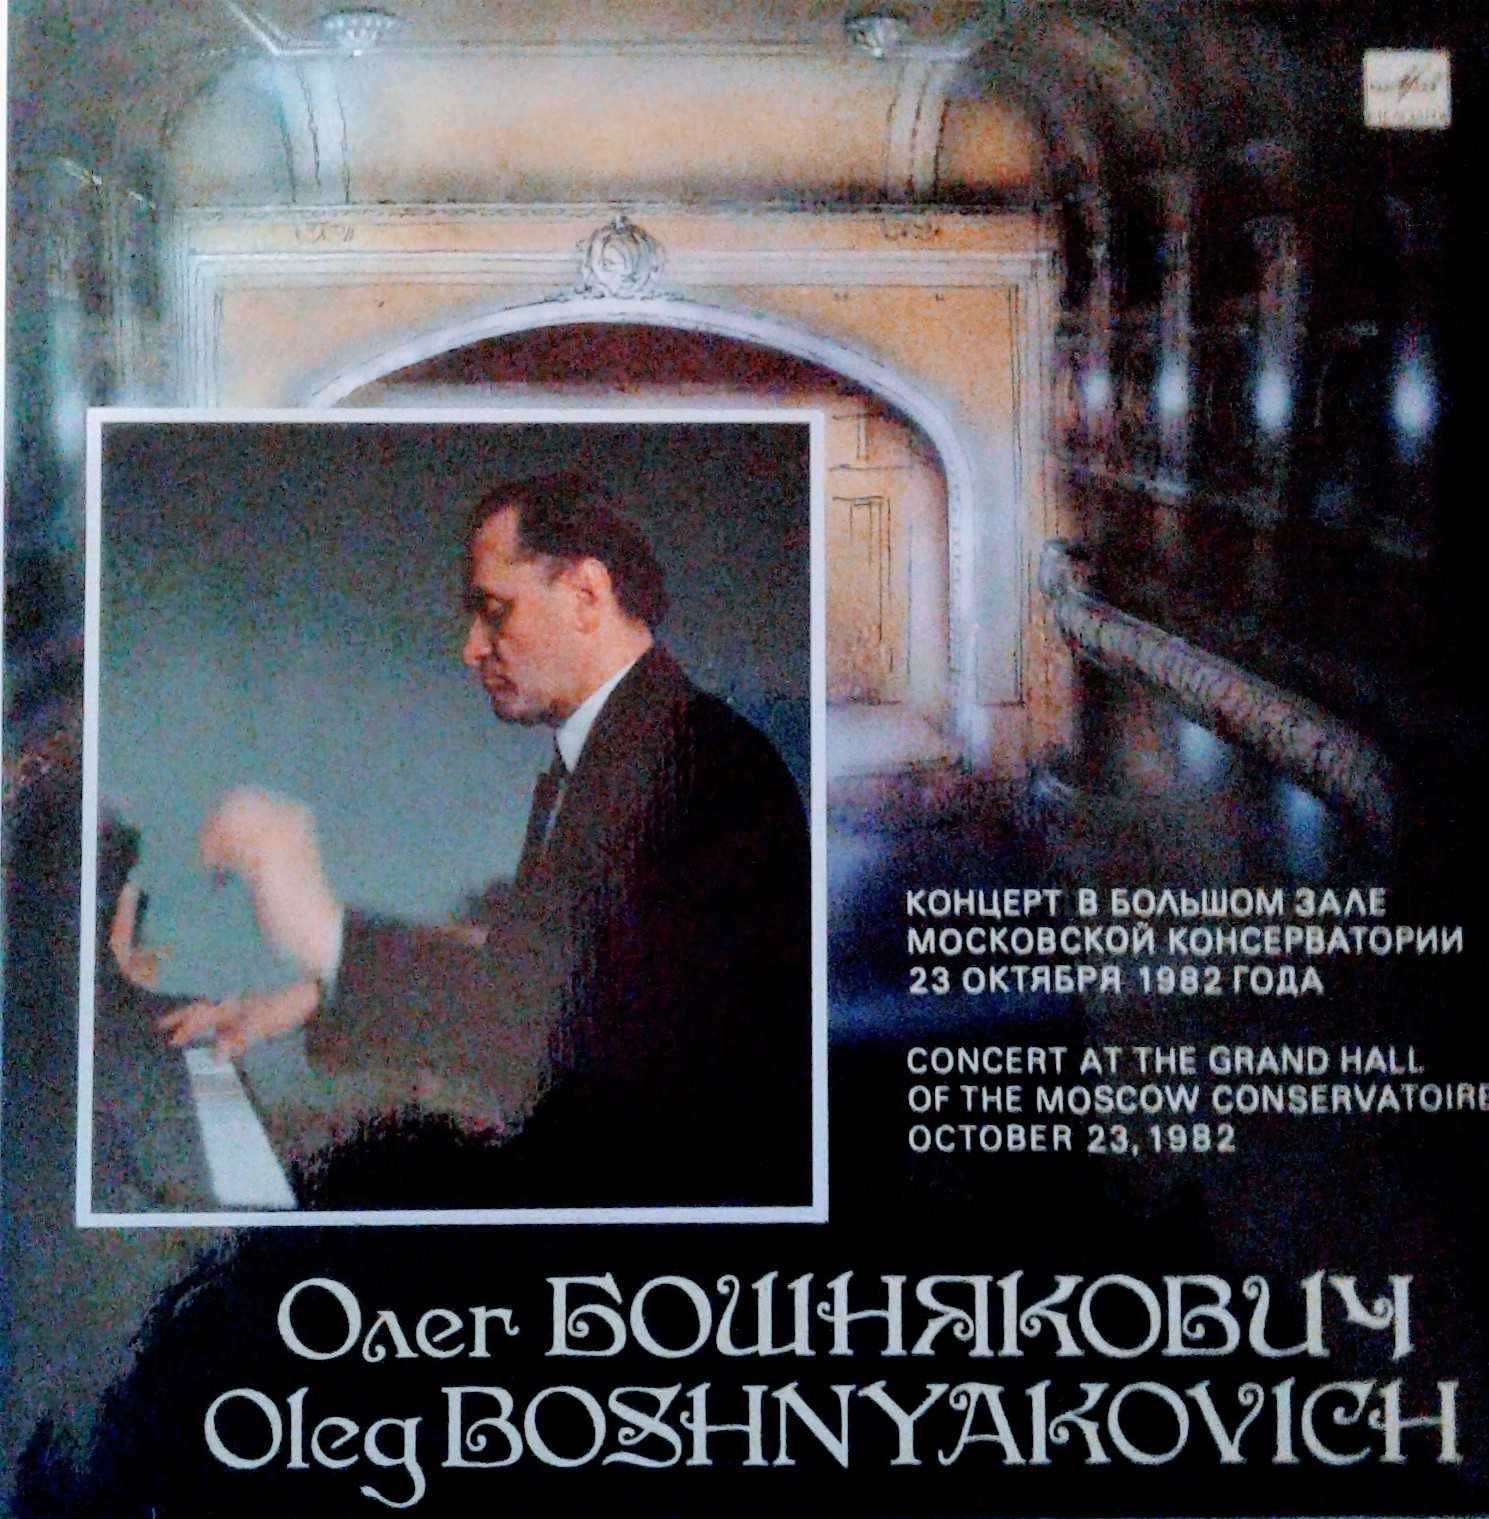 Винил Олег Бошнякович концерт 1982 года